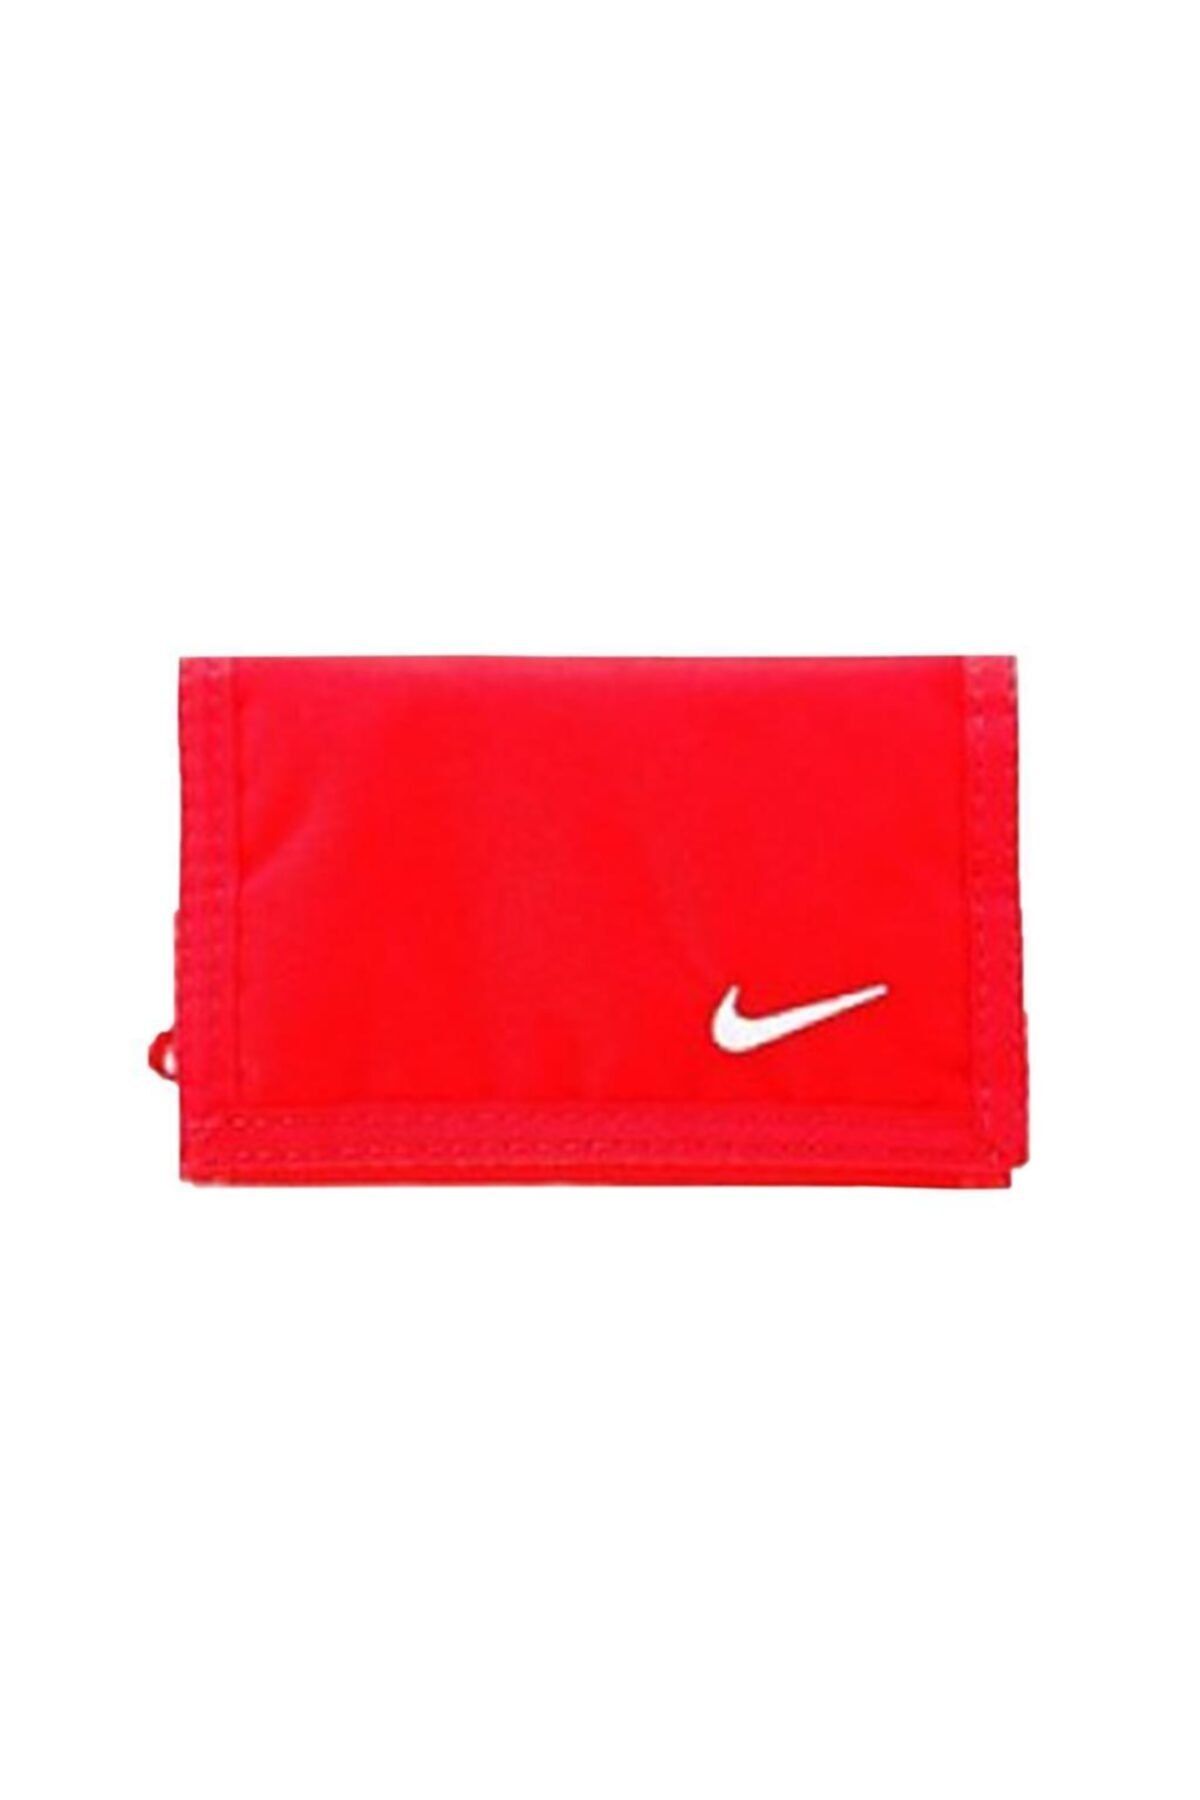 Nike Unisex Basic Wallet Spor Cüzdan Kırmızı